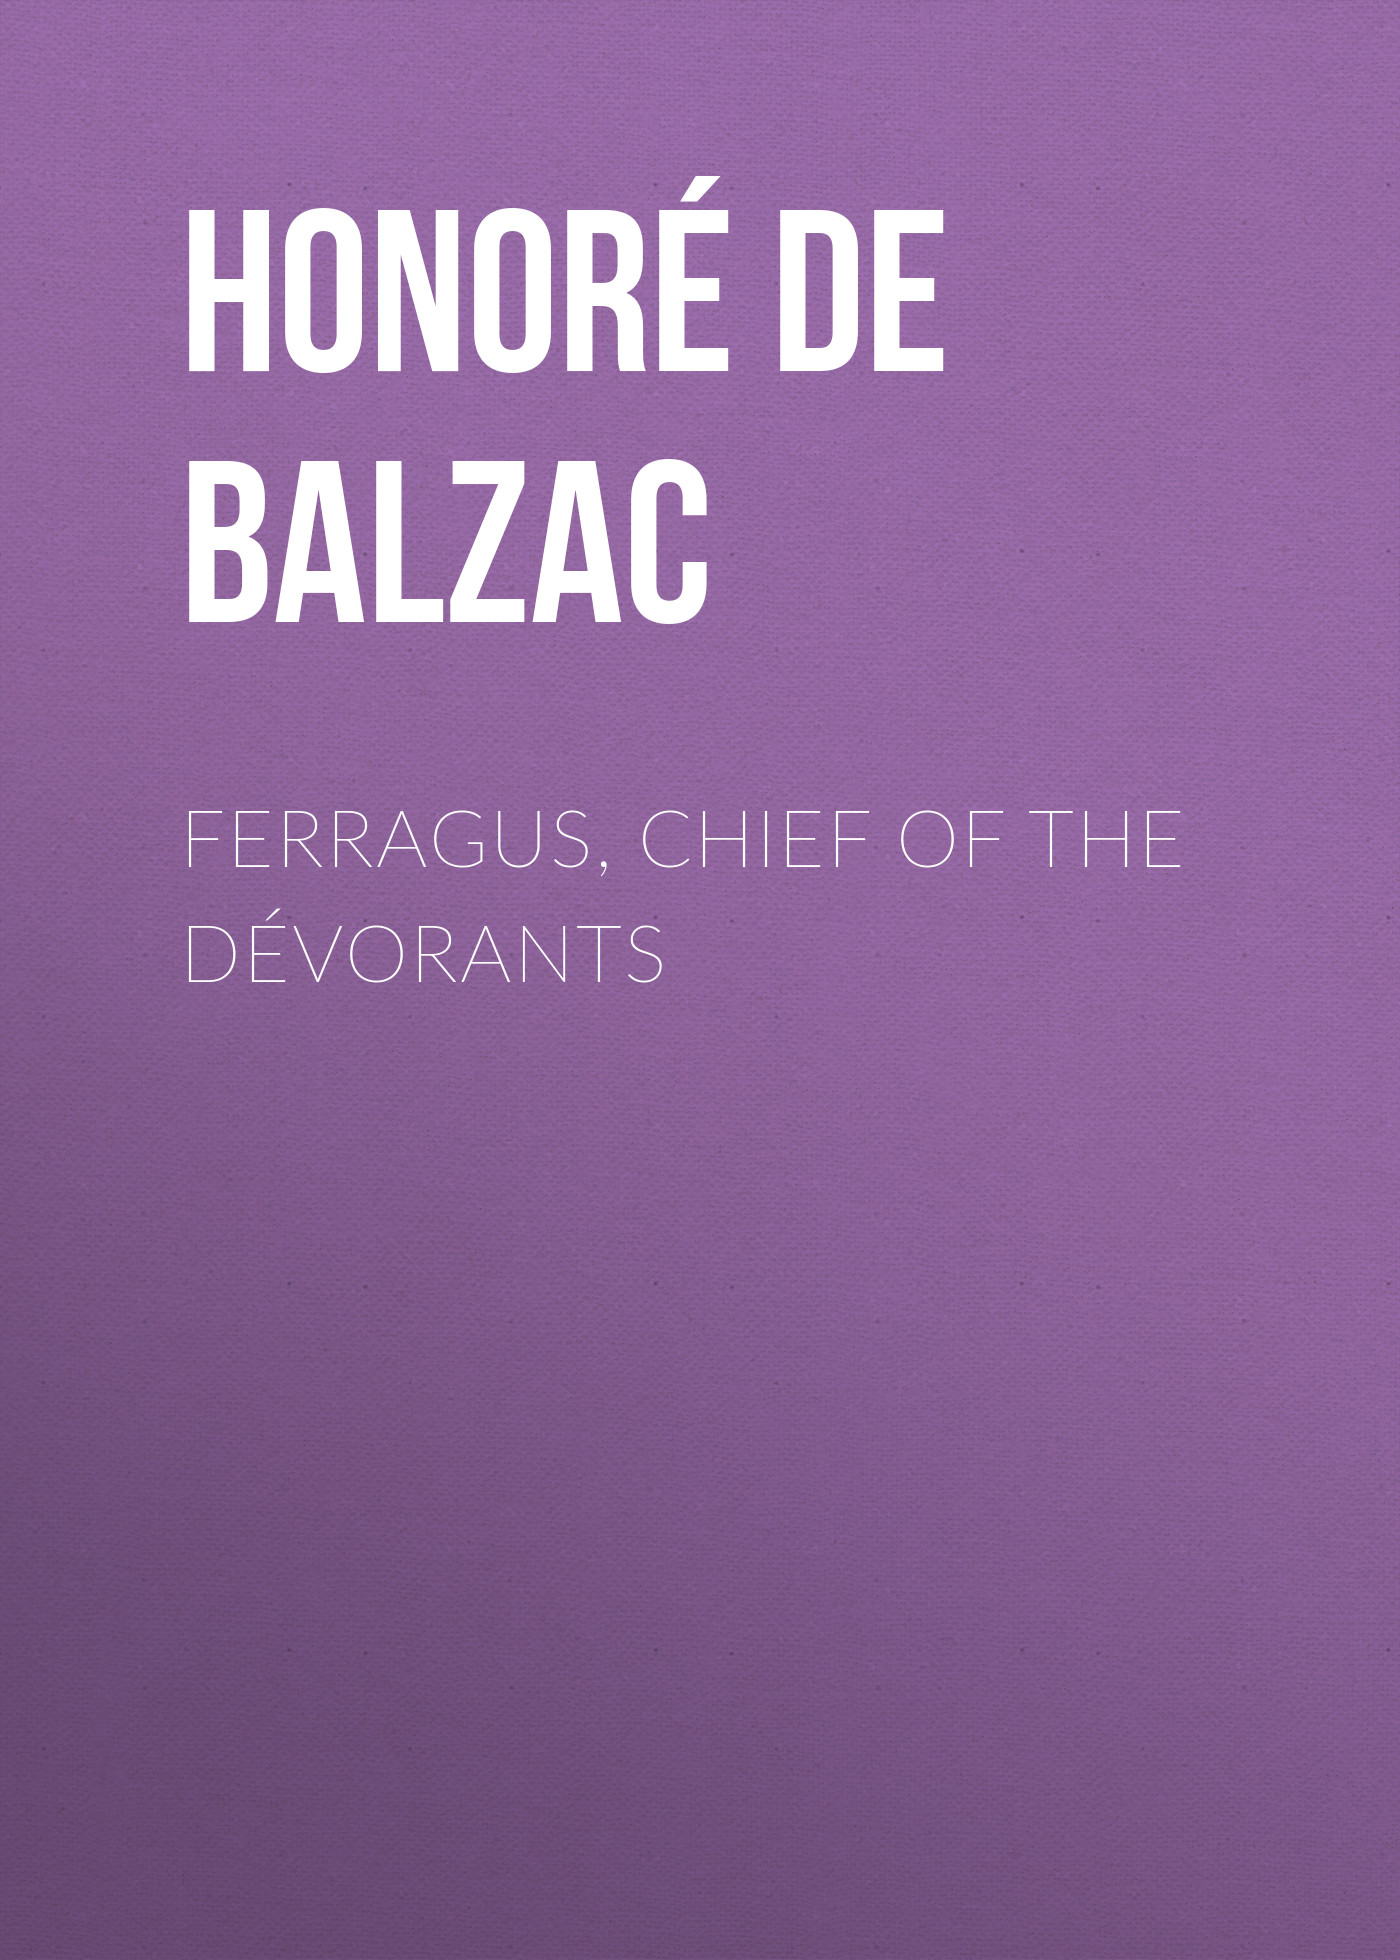 Книга Ferragus, Chief of the Dévorants из серии , созданная Honoré Balzac, может относится к жанру Литература 19 века, Зарубежная старинная литература, Зарубежная классика. Стоимость электронной книги Ferragus, Chief of the Dévorants с идентификатором 25021171 составляет 0 руб.